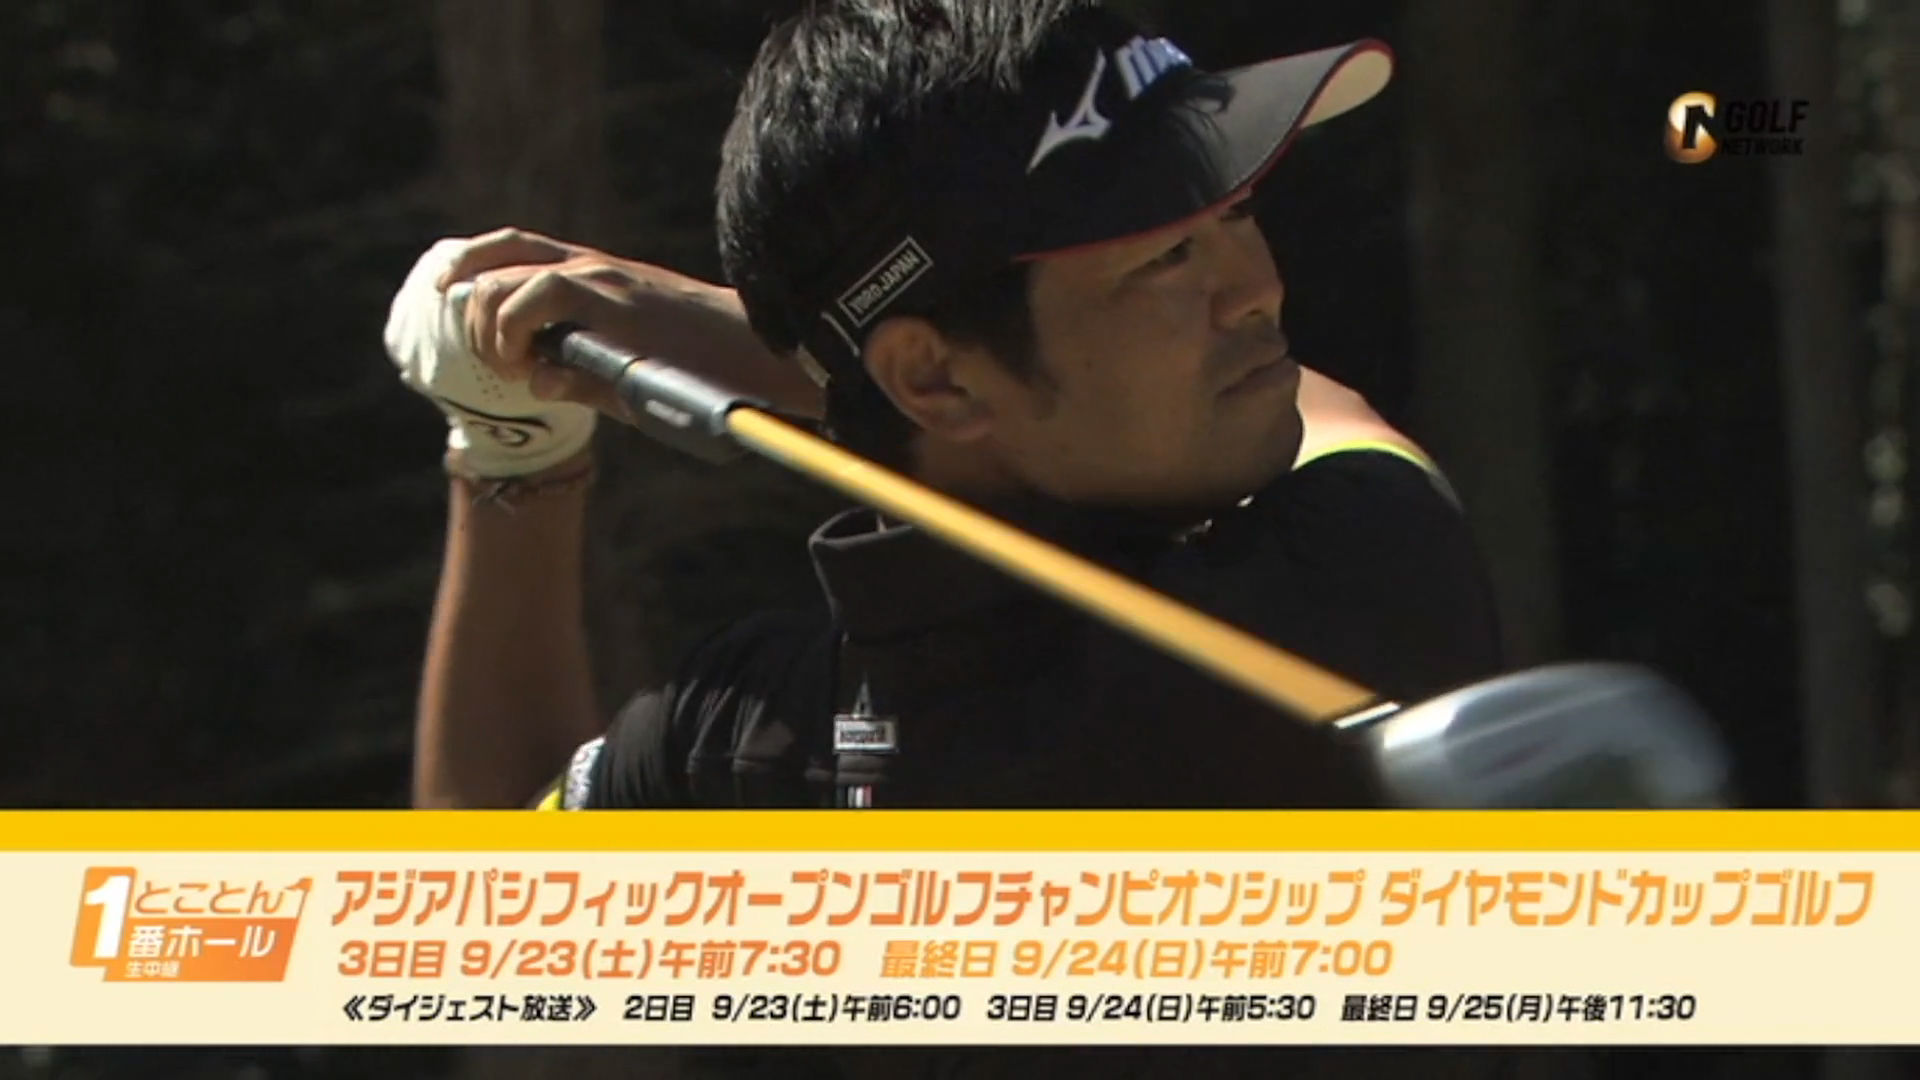 アジアパシフィックオープンゴルフチャンピオンシップ ダイヤモンドカップゴルフ